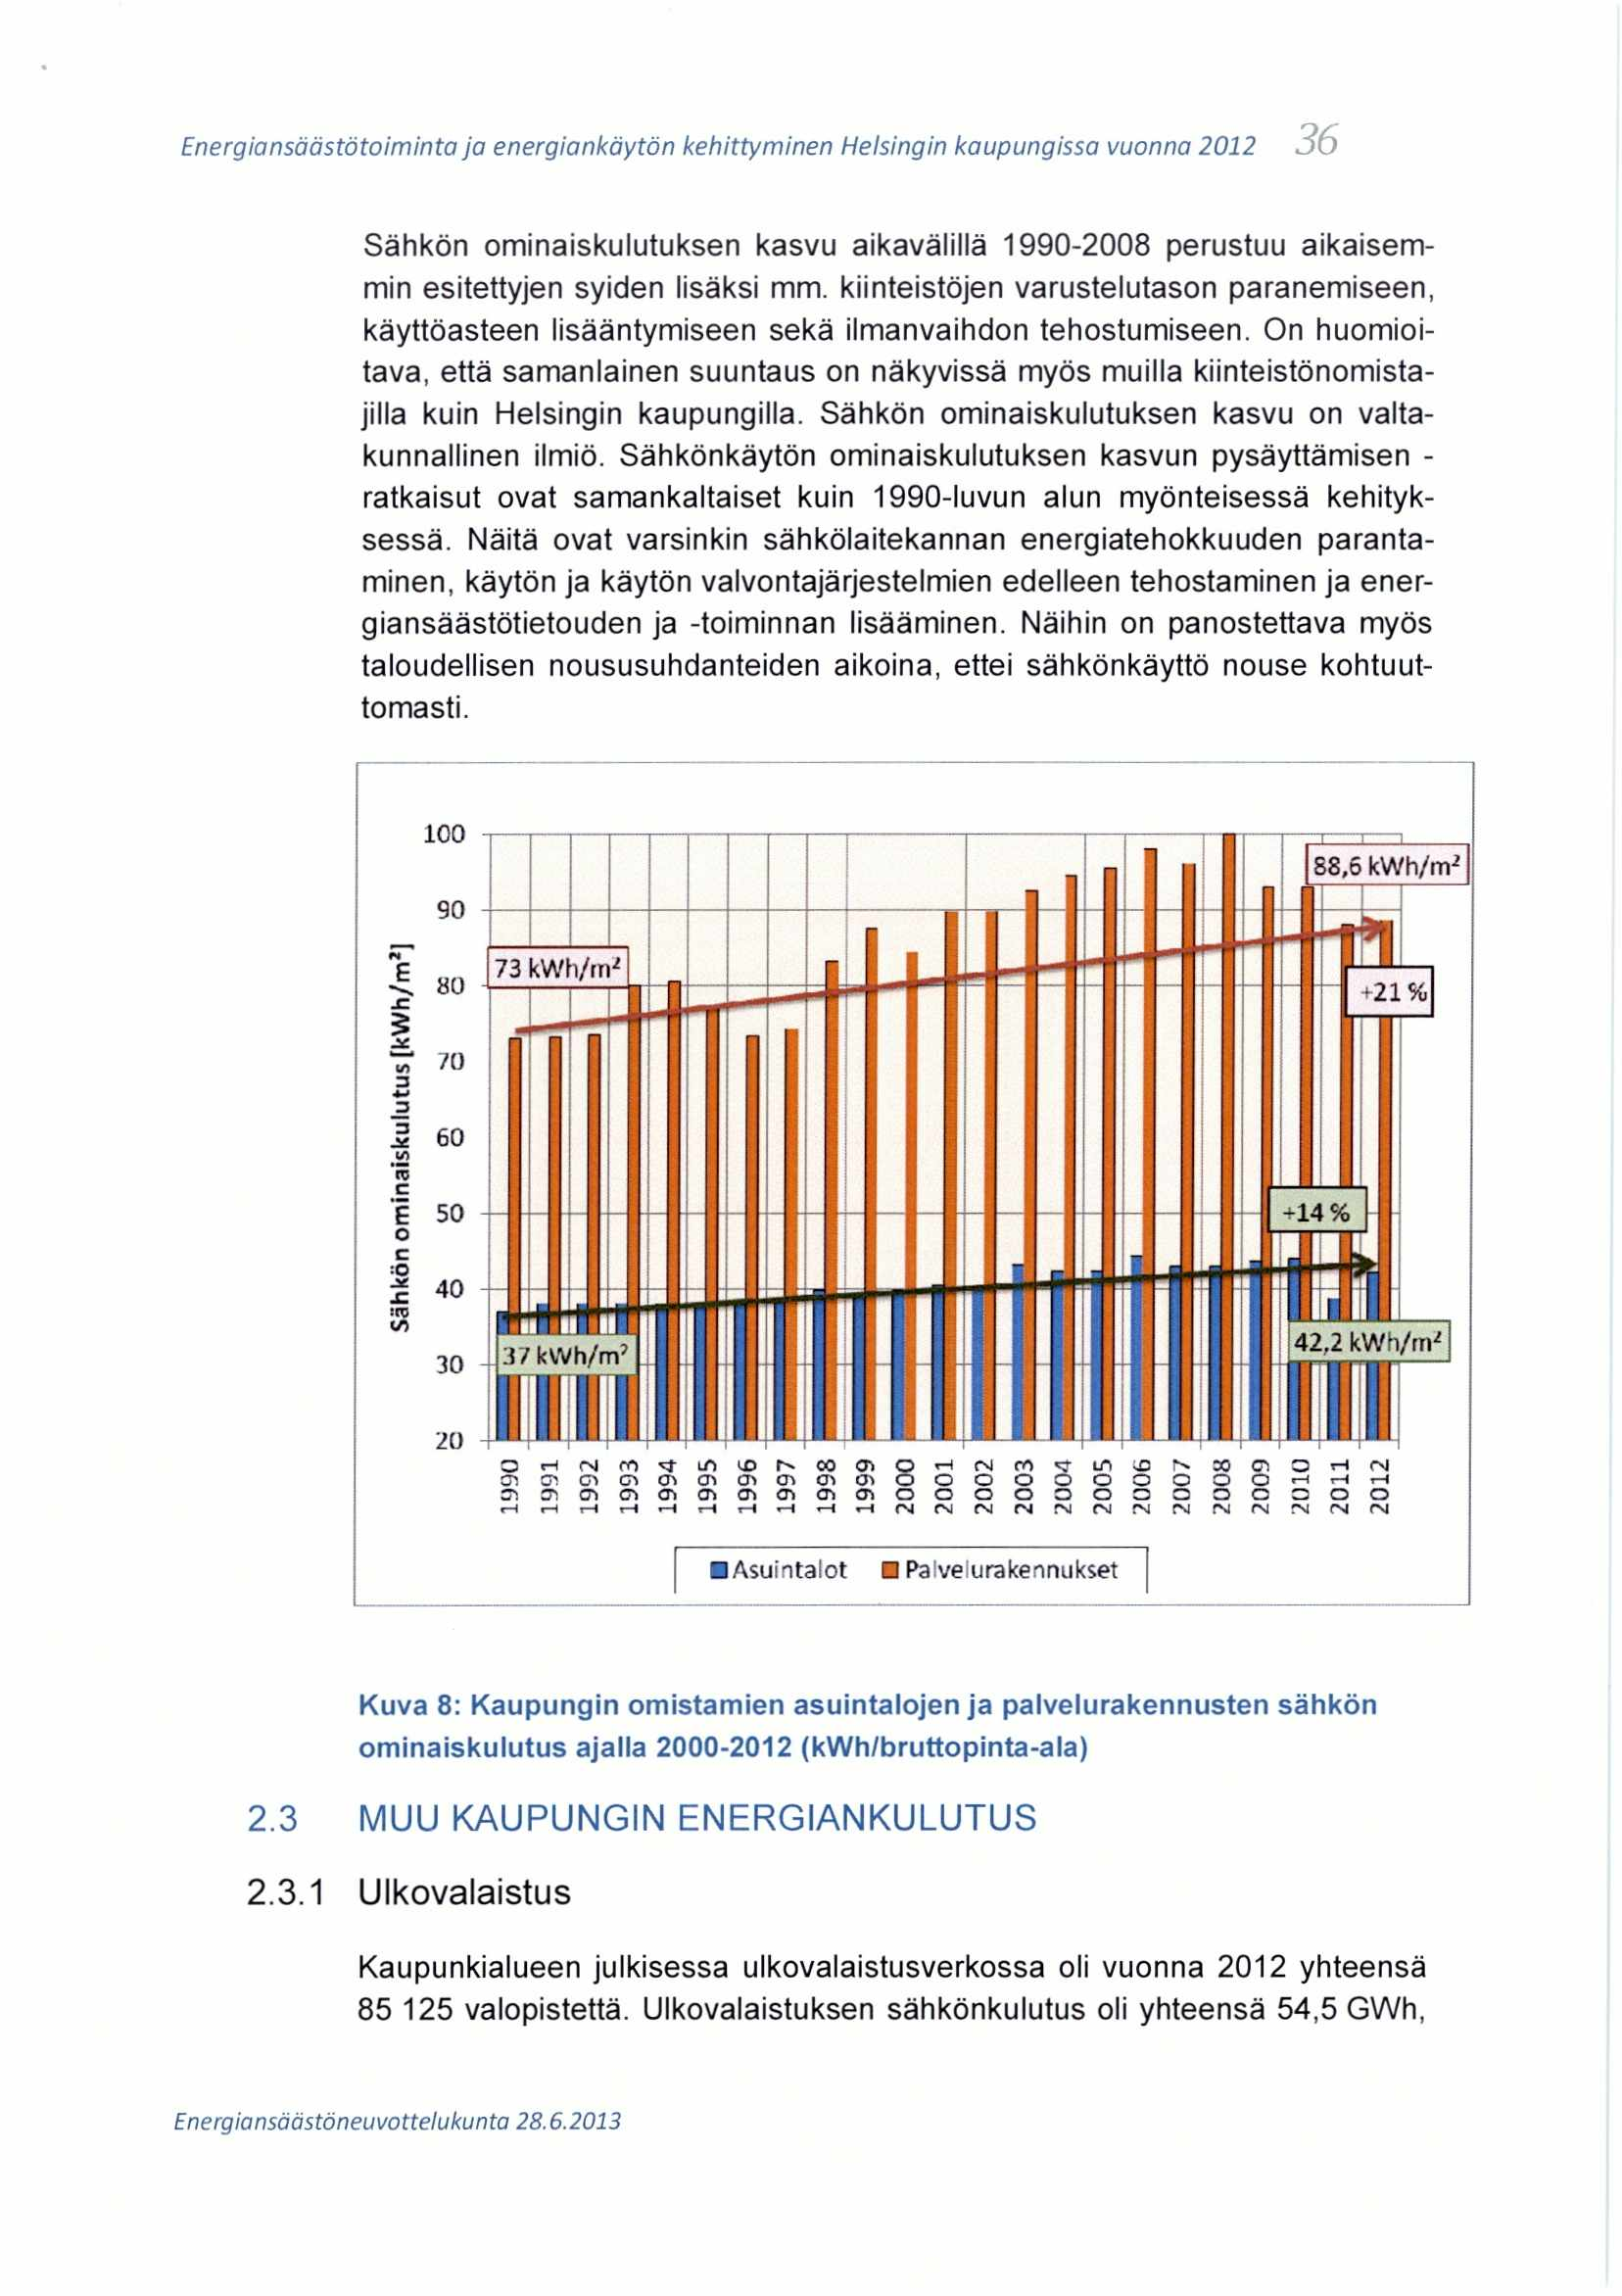 ,--,,- Energiansäästötoiminta ja energiankäytön kehittyminen Helsingin kaupungissa vuonna 2012,50 Sähkön ominaiskulutuksen kasvu aikavälillä 1990-2008 perustuu aikaisemmin esitettyjen syiden lisäksi